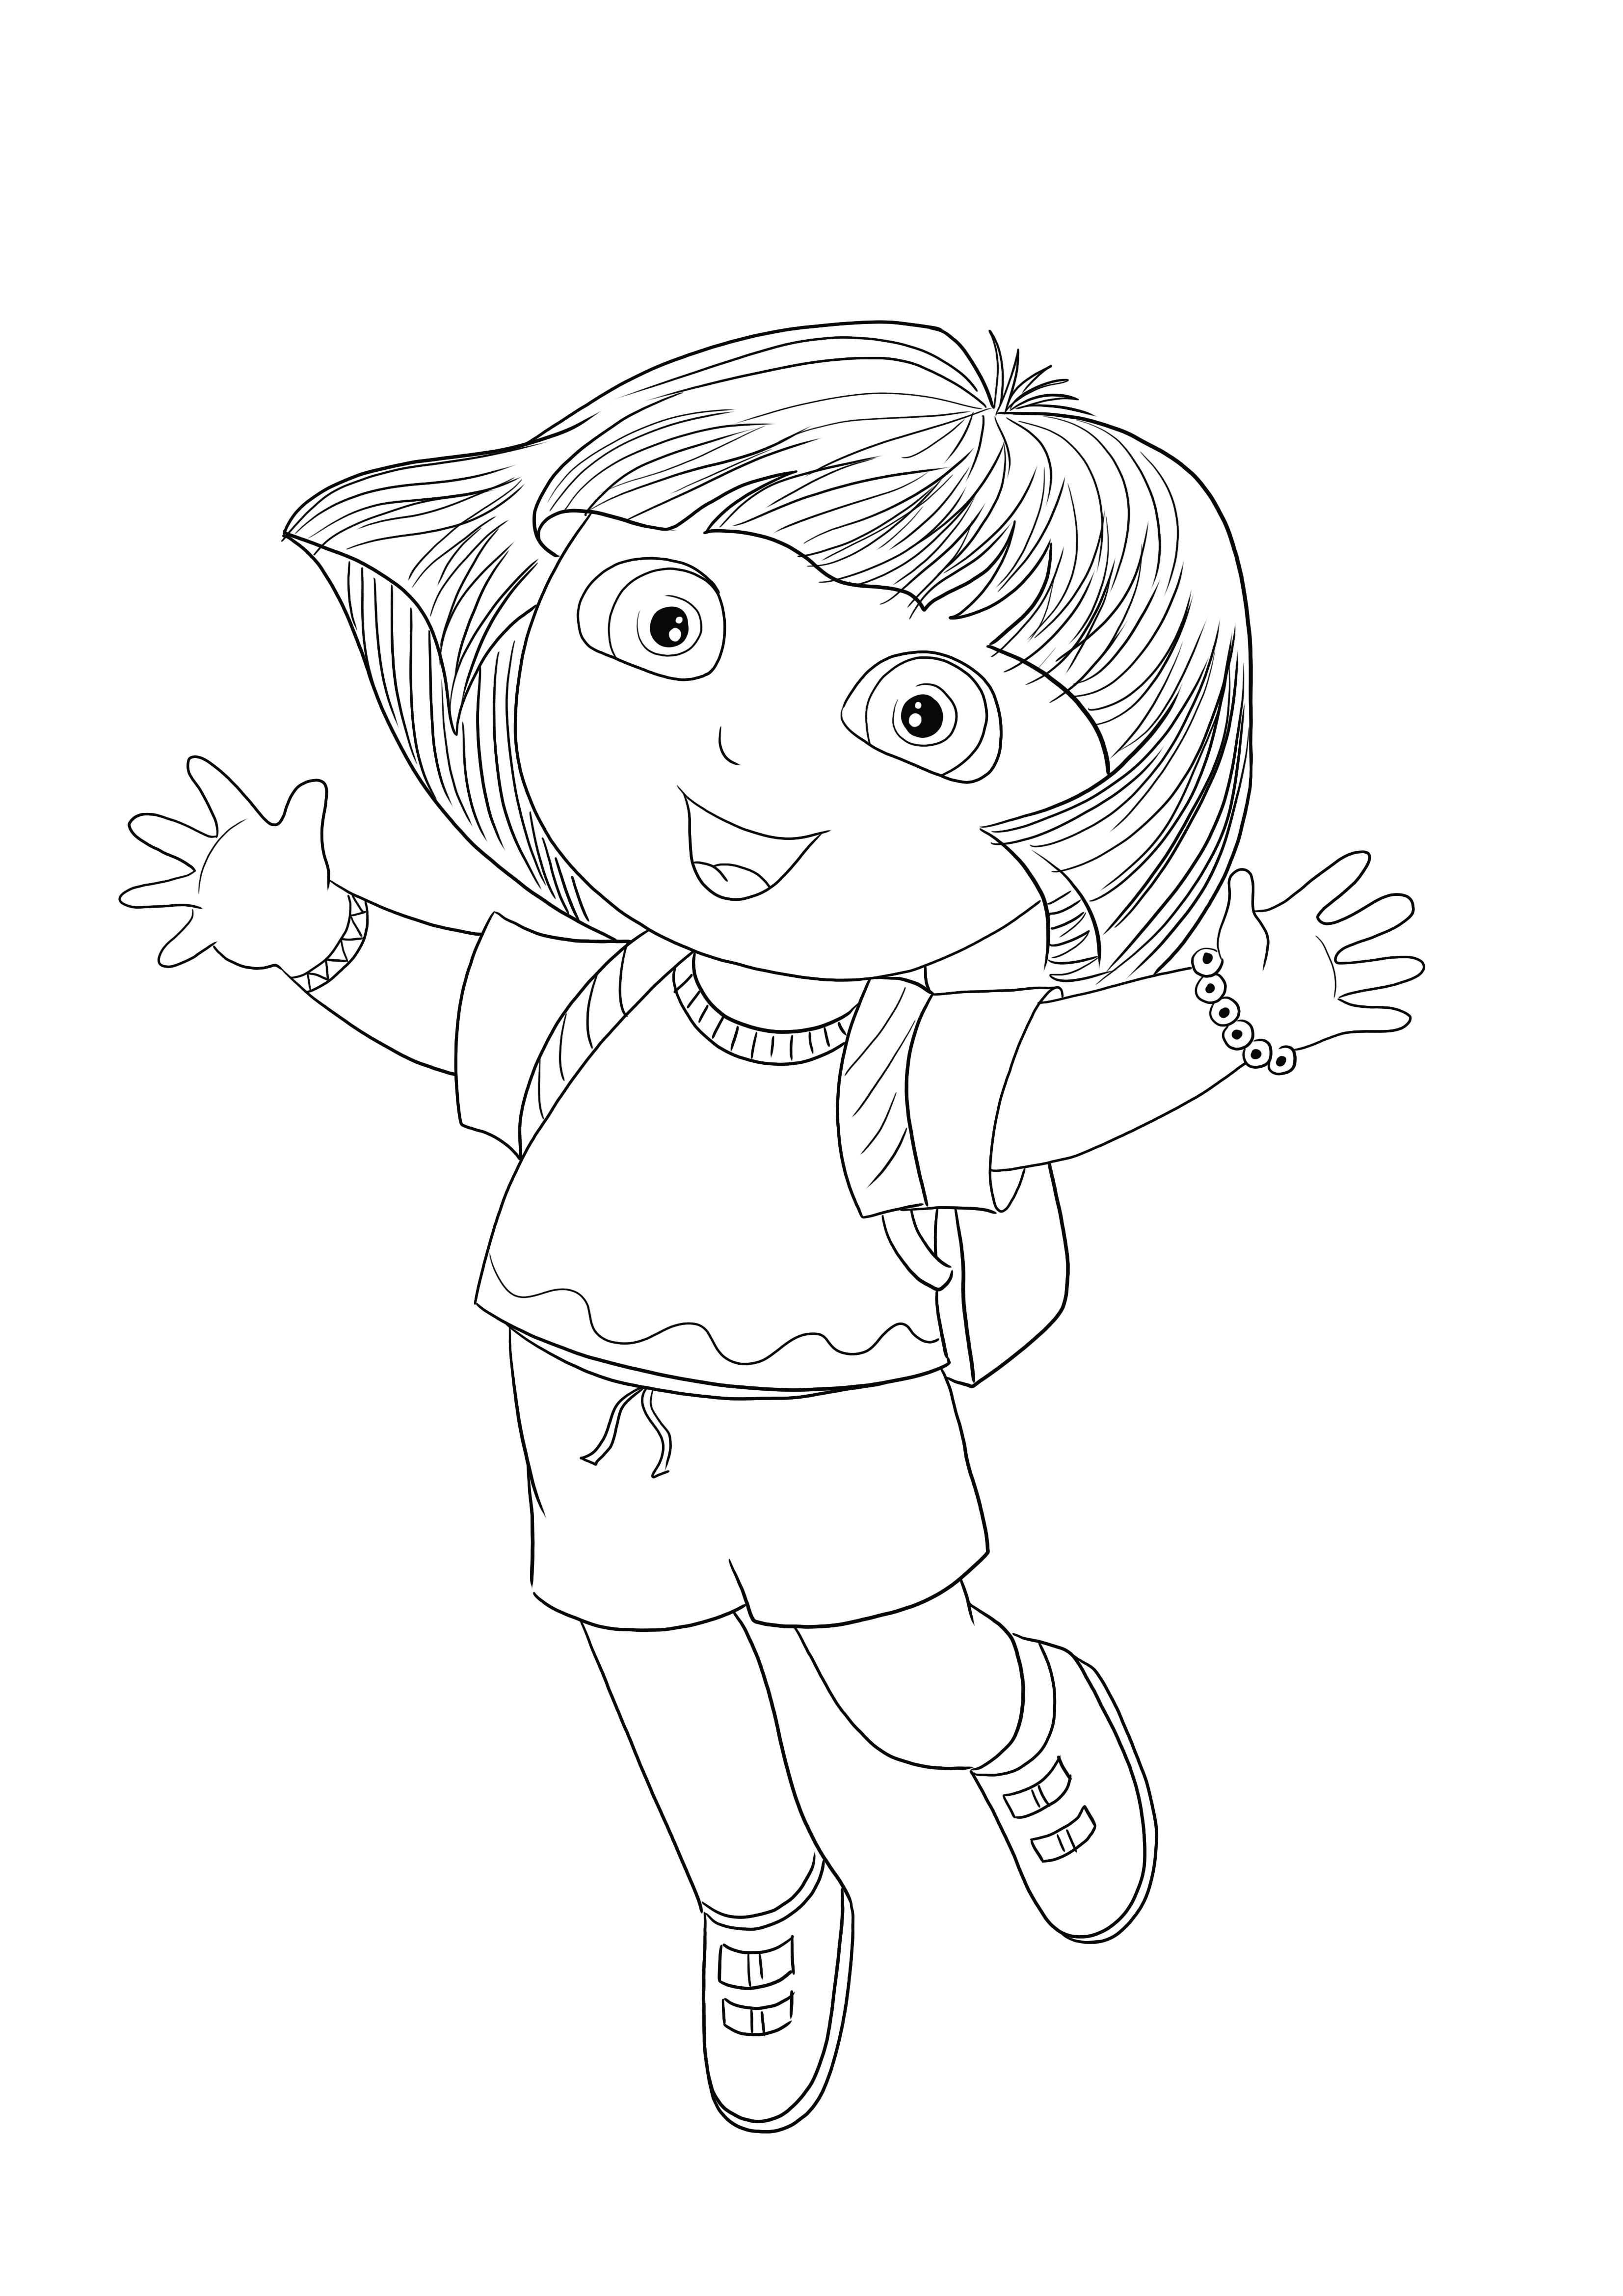 Happy Dora skacze, ponieważ lubi być kolorowana i drukowana za darmo przez swoich fanów